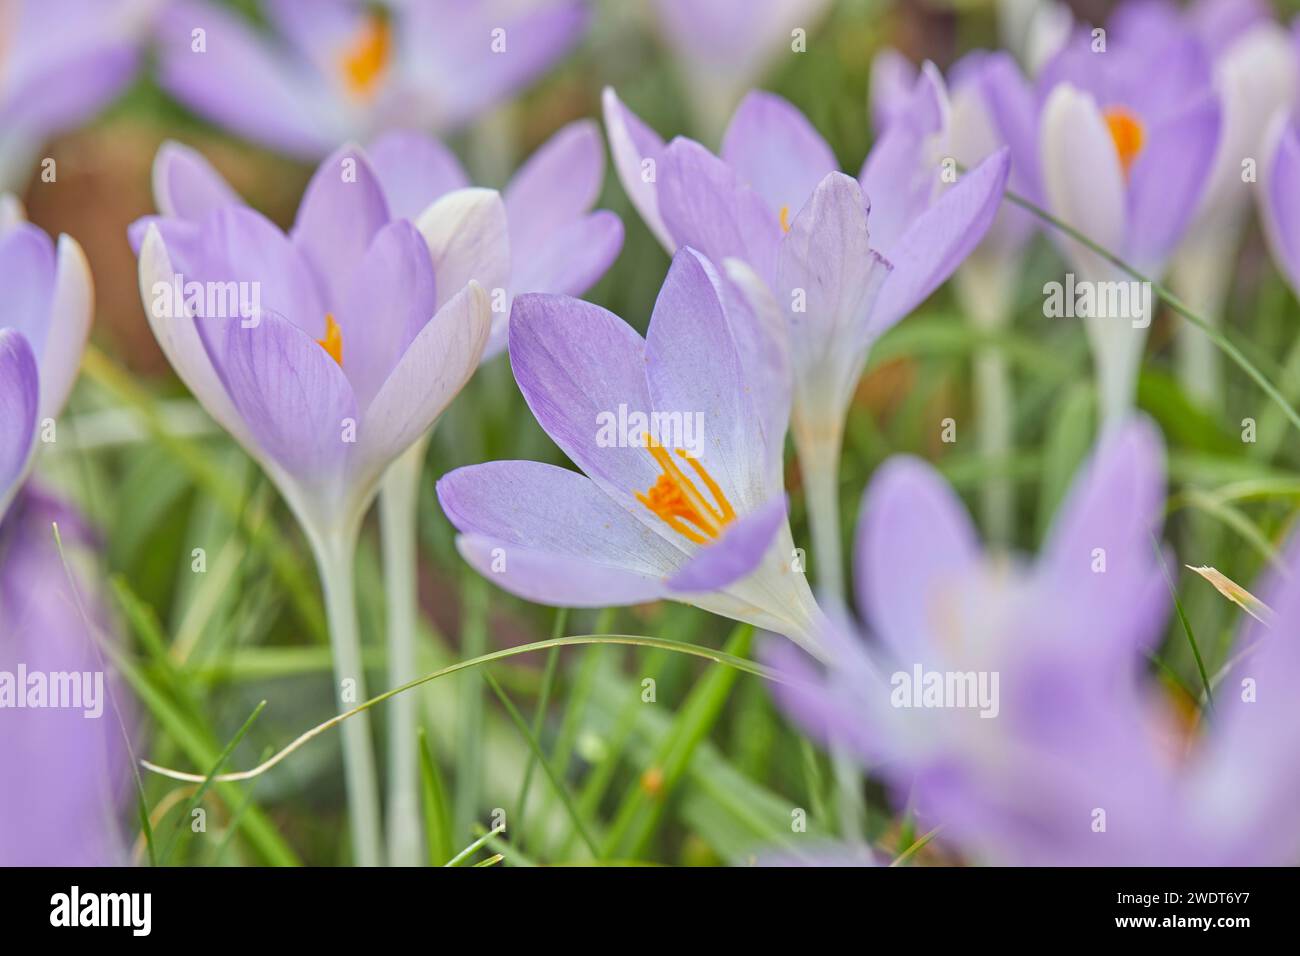 Crocus pourpre en fleur au début du printemps, une des premières fleurs à annoncer l'arrivée du printemps, dans le Devon, Angleterre, Royaume-Uni, Europe Banque D'Images